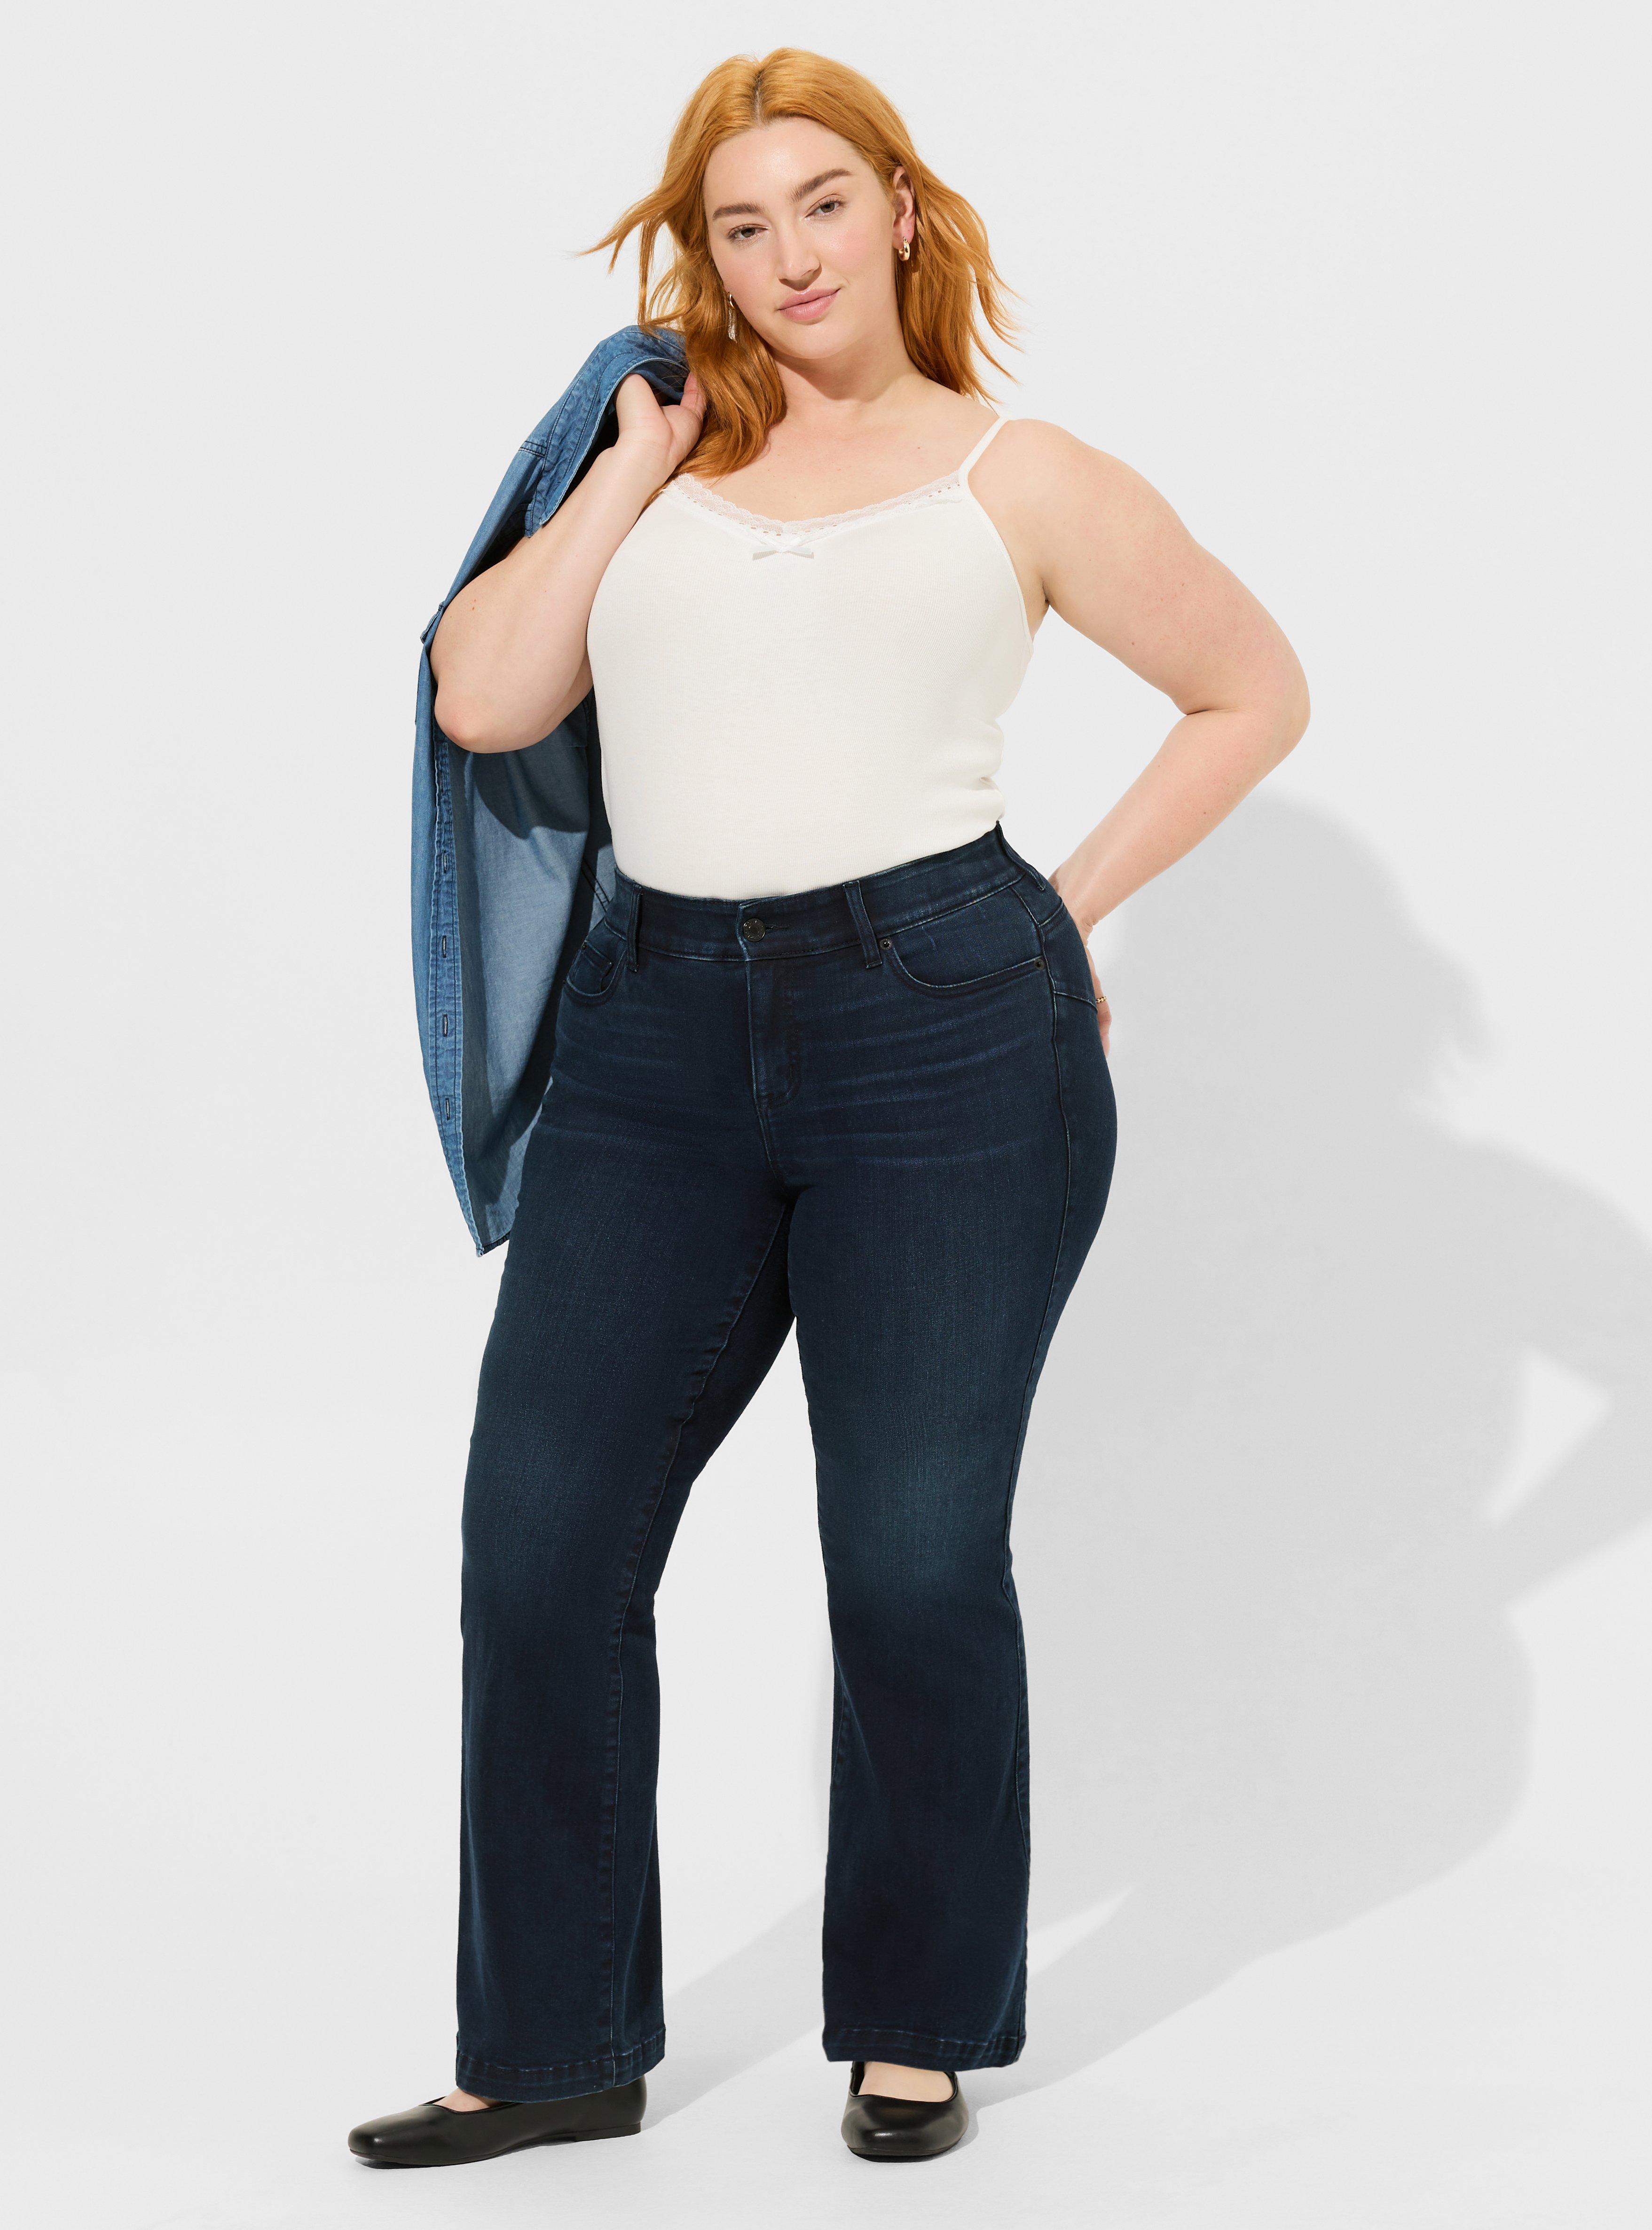 Reyon Plain Women Ultra-Soft Stylish Trouser, Size: 26.0, Model